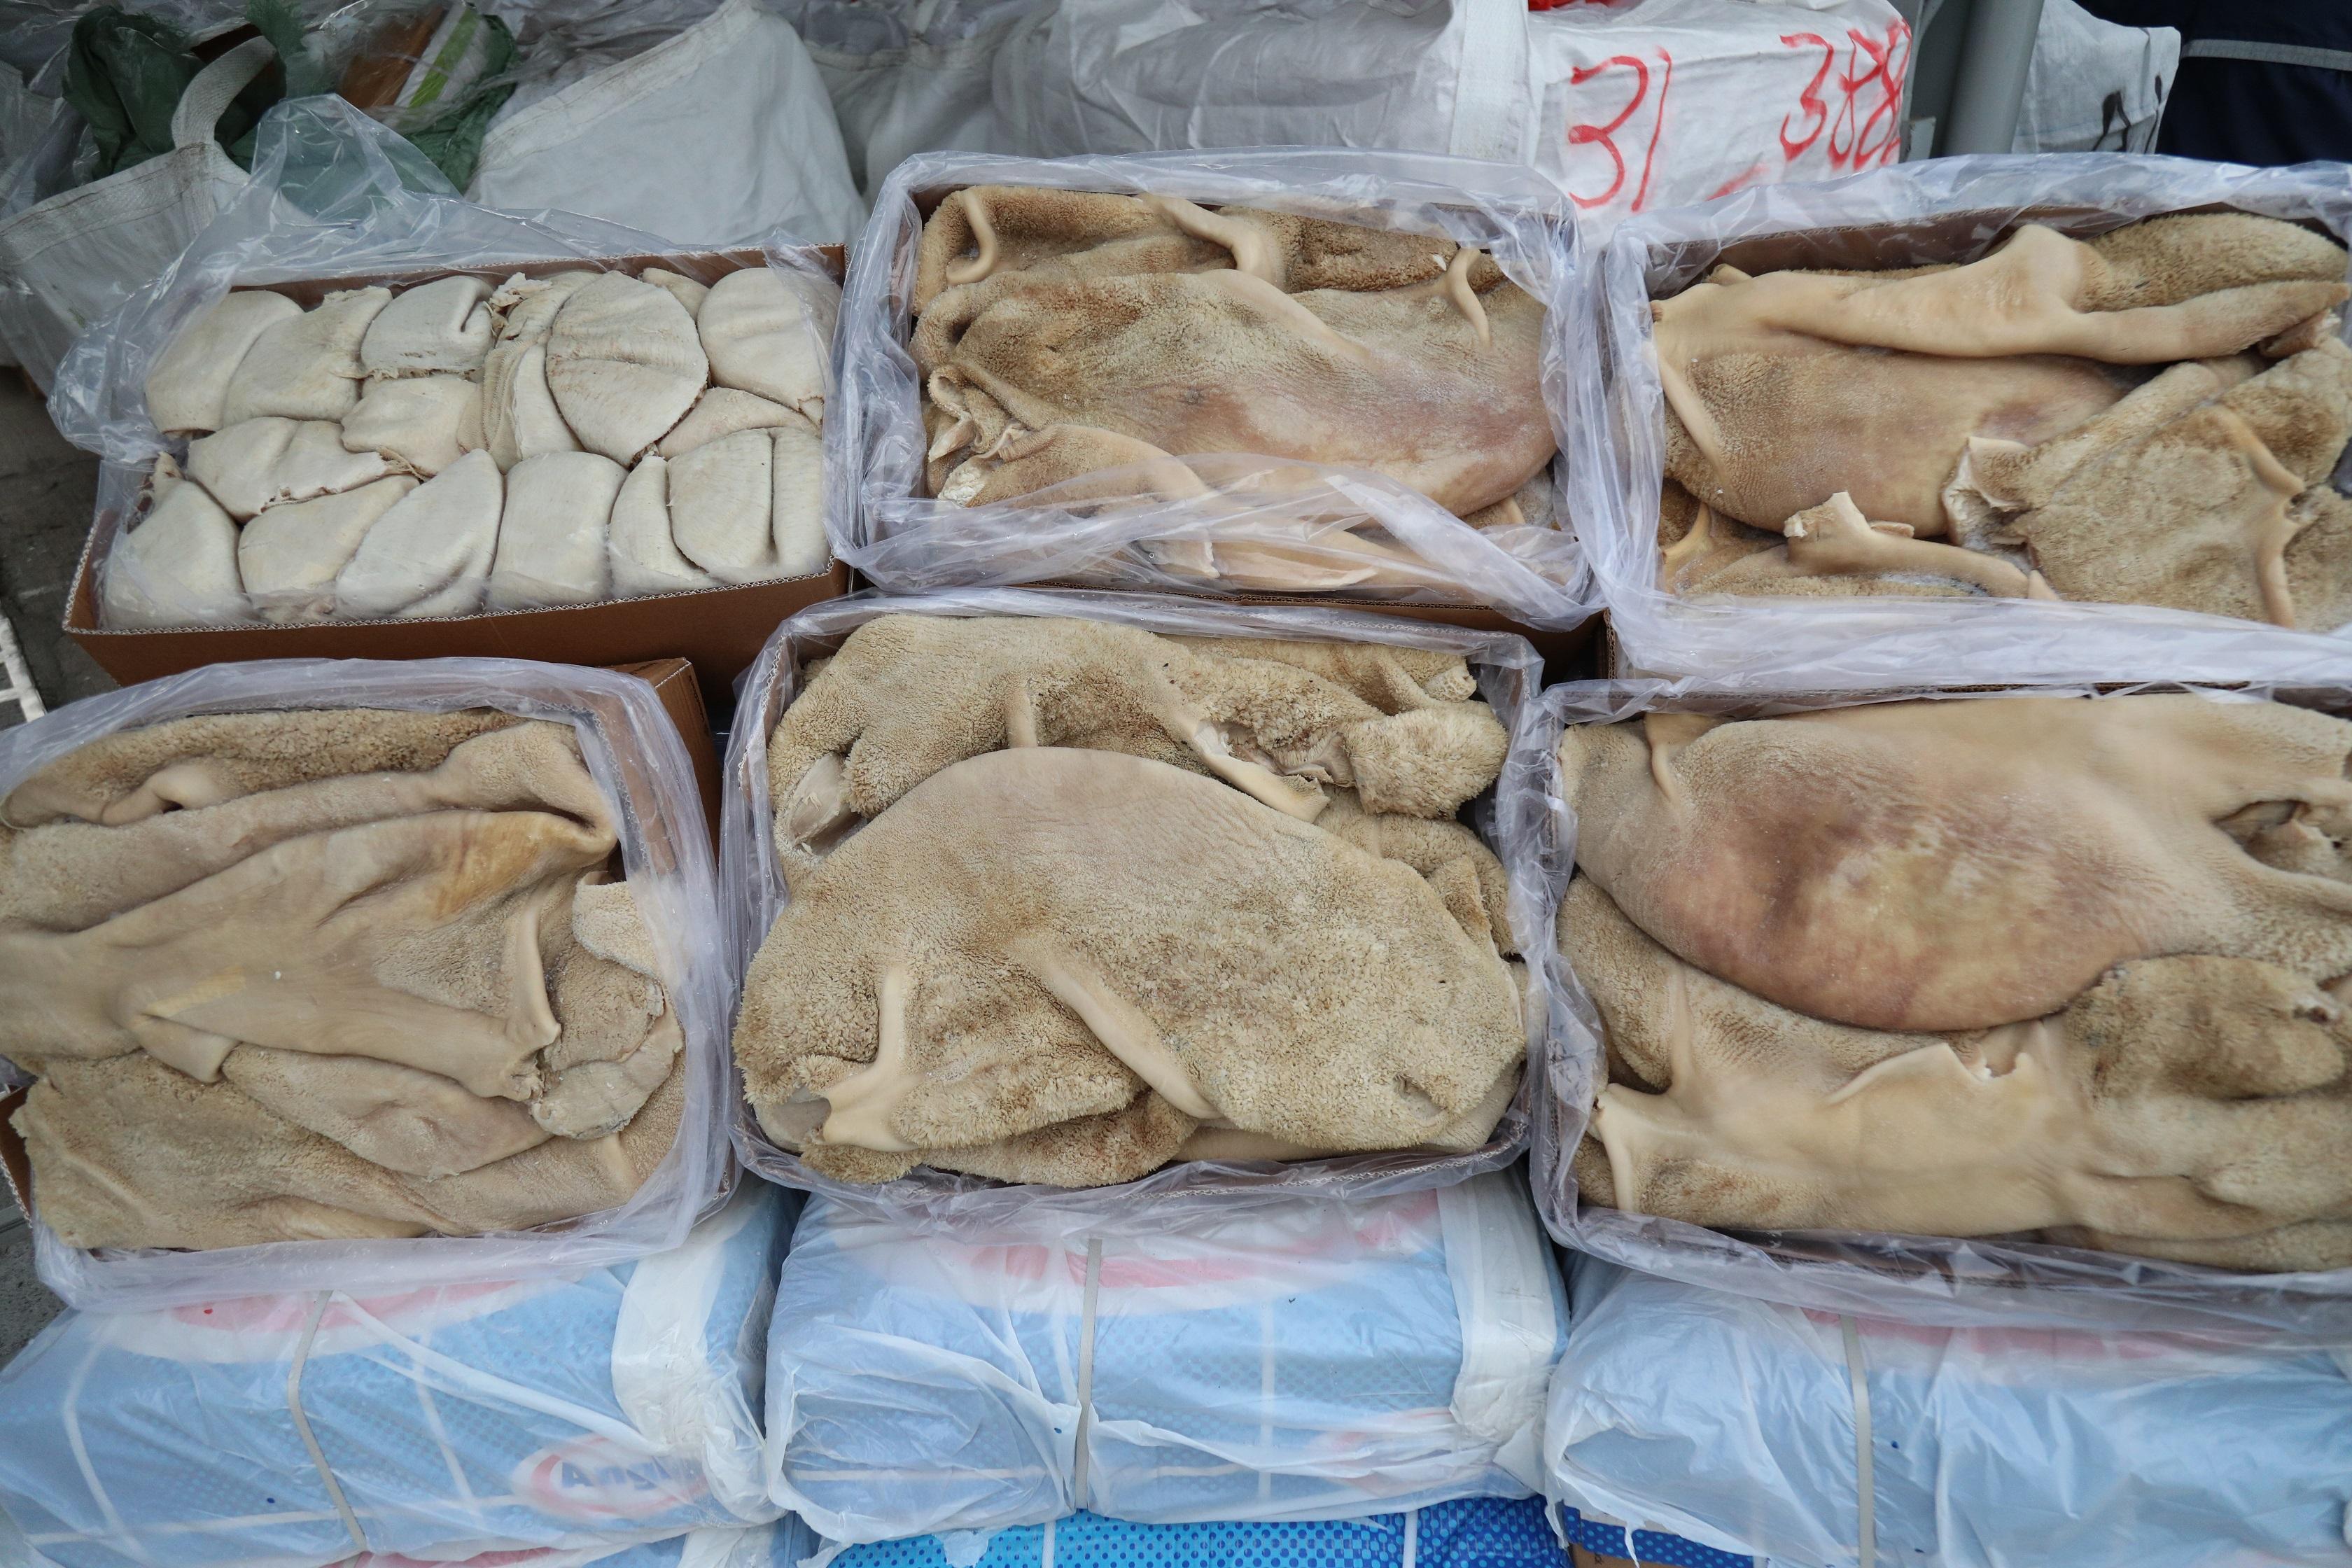 香港海關昨日（一月十三日）在香港西南面水域進行反走私行動，偵破一宗涉嫌利用貨船走私的案件，檢獲約三十五噸懷疑走私凍肉，估計市值約五百二十萬元。圖示部分檢獲的懷疑走私凍肉。